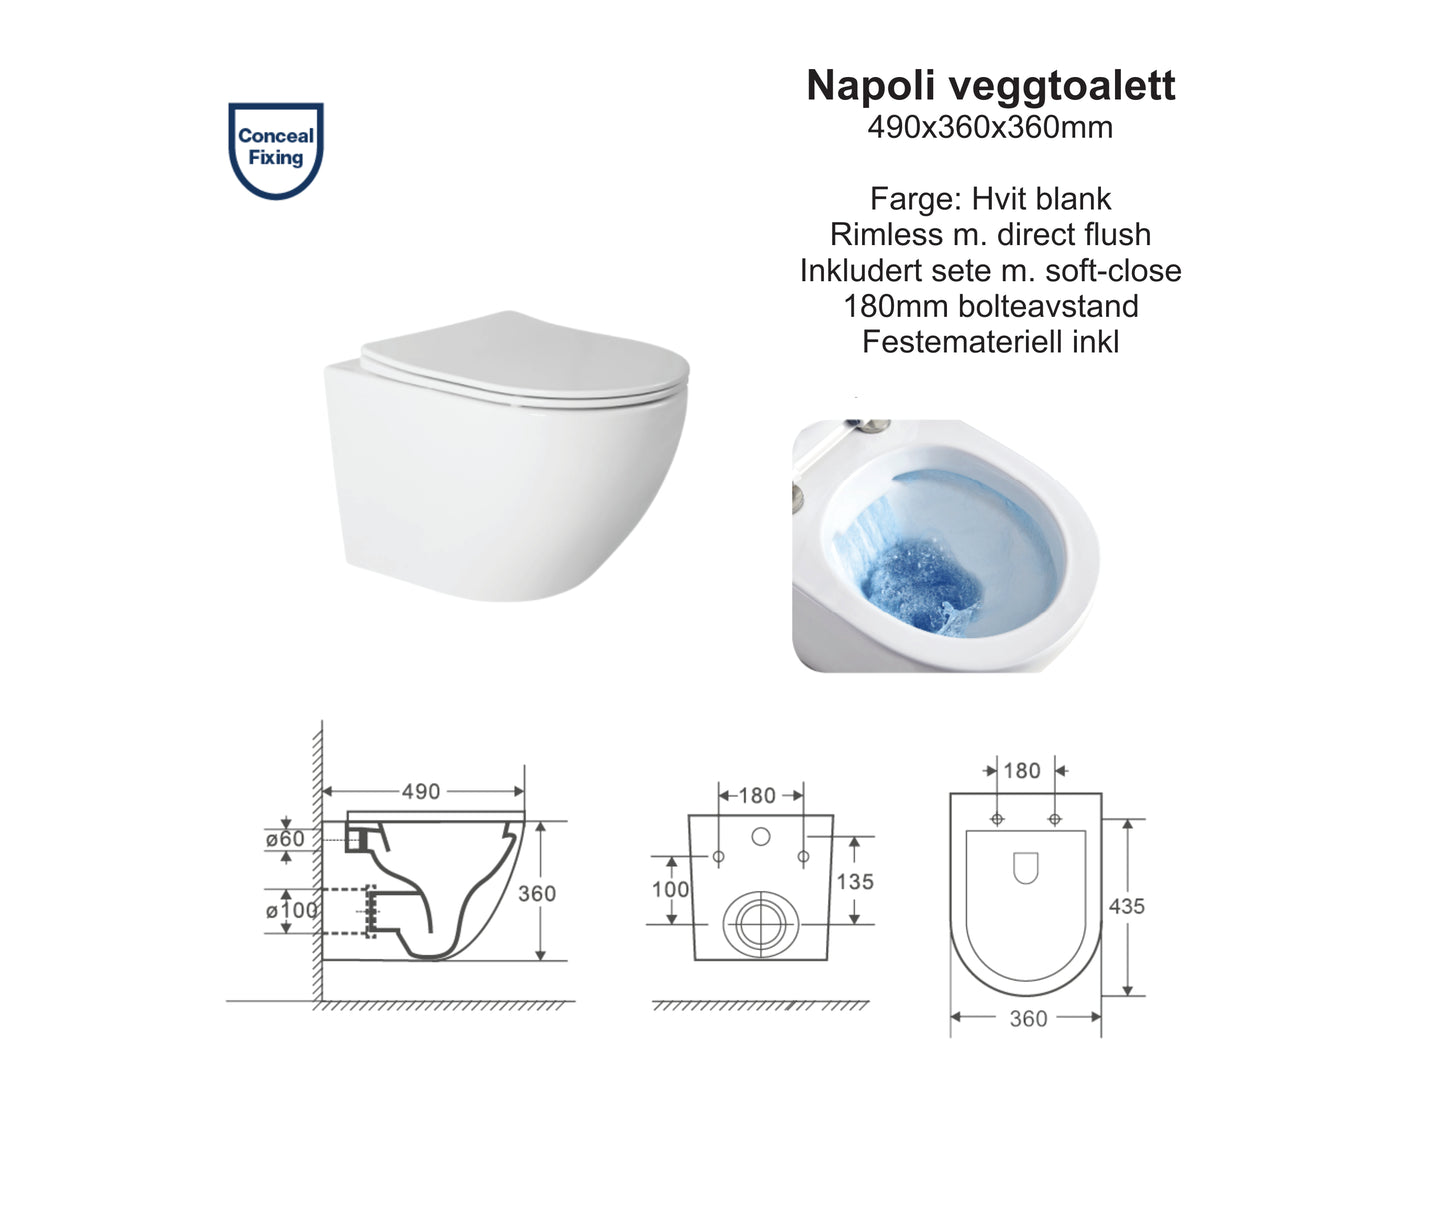 Napoli hvit glans toalettpakke, veggskål, softclose sete og standard sisterne